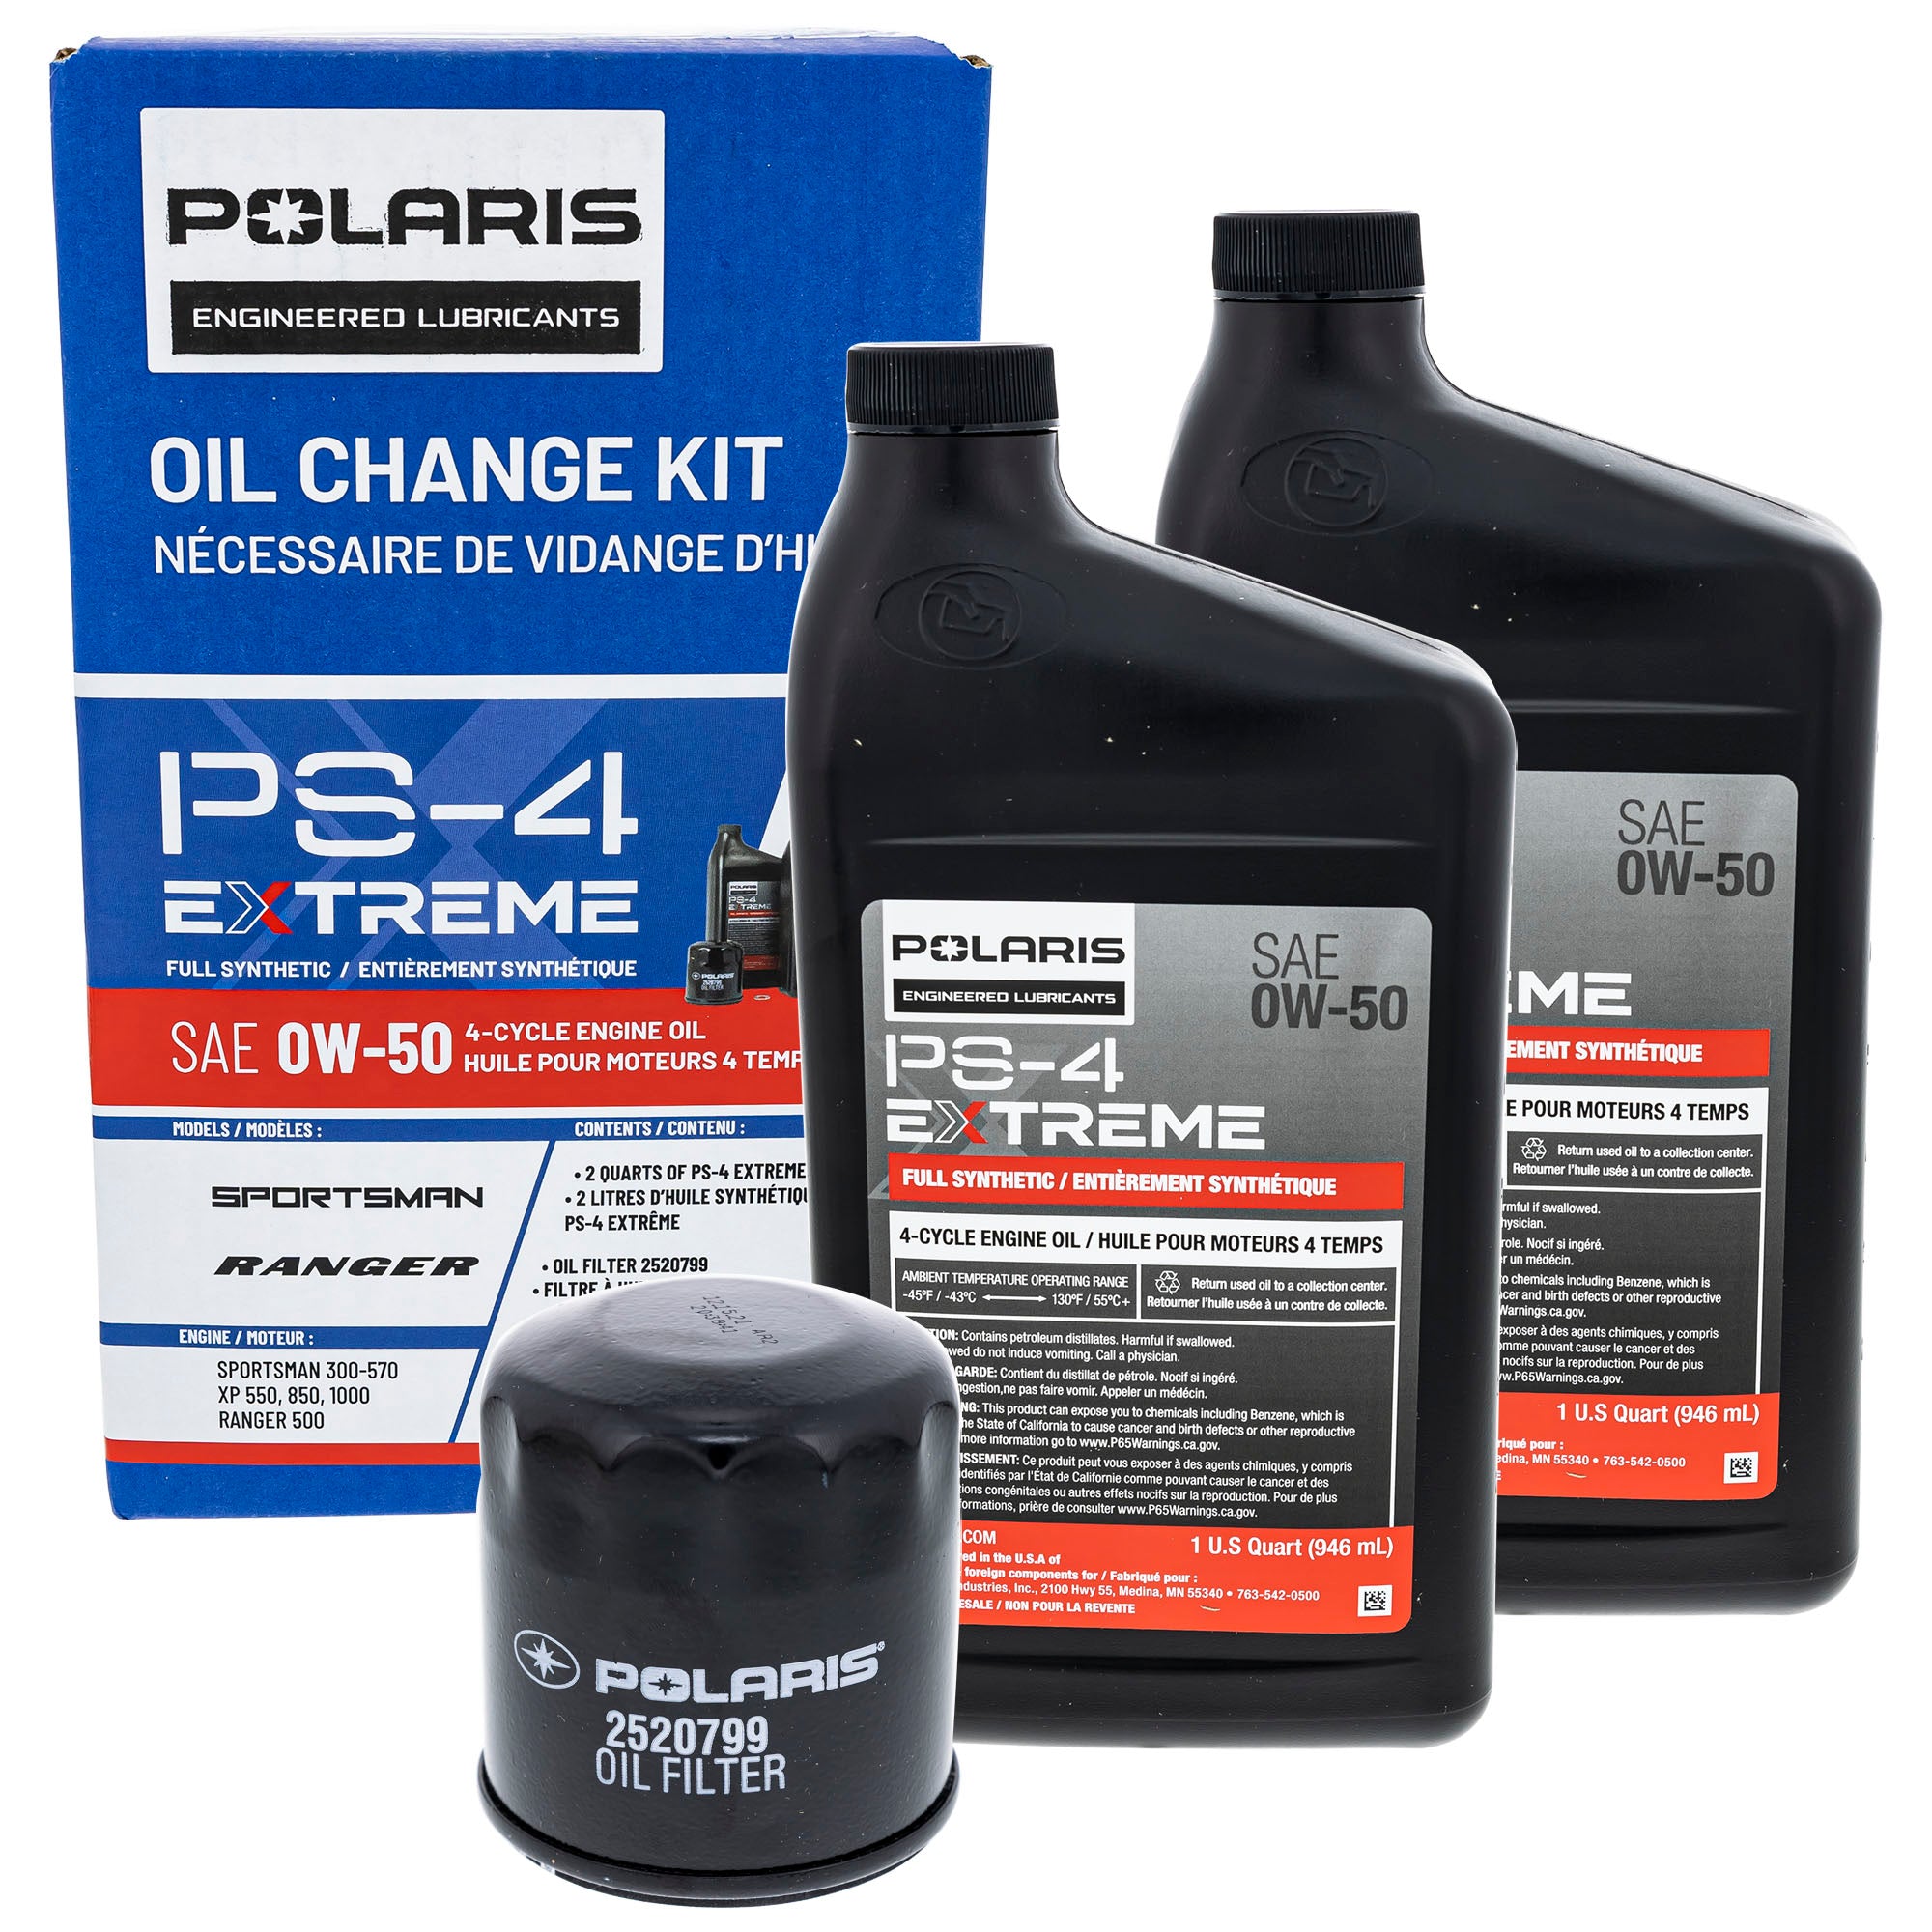 Polaris 2890055 Oil Change Kit